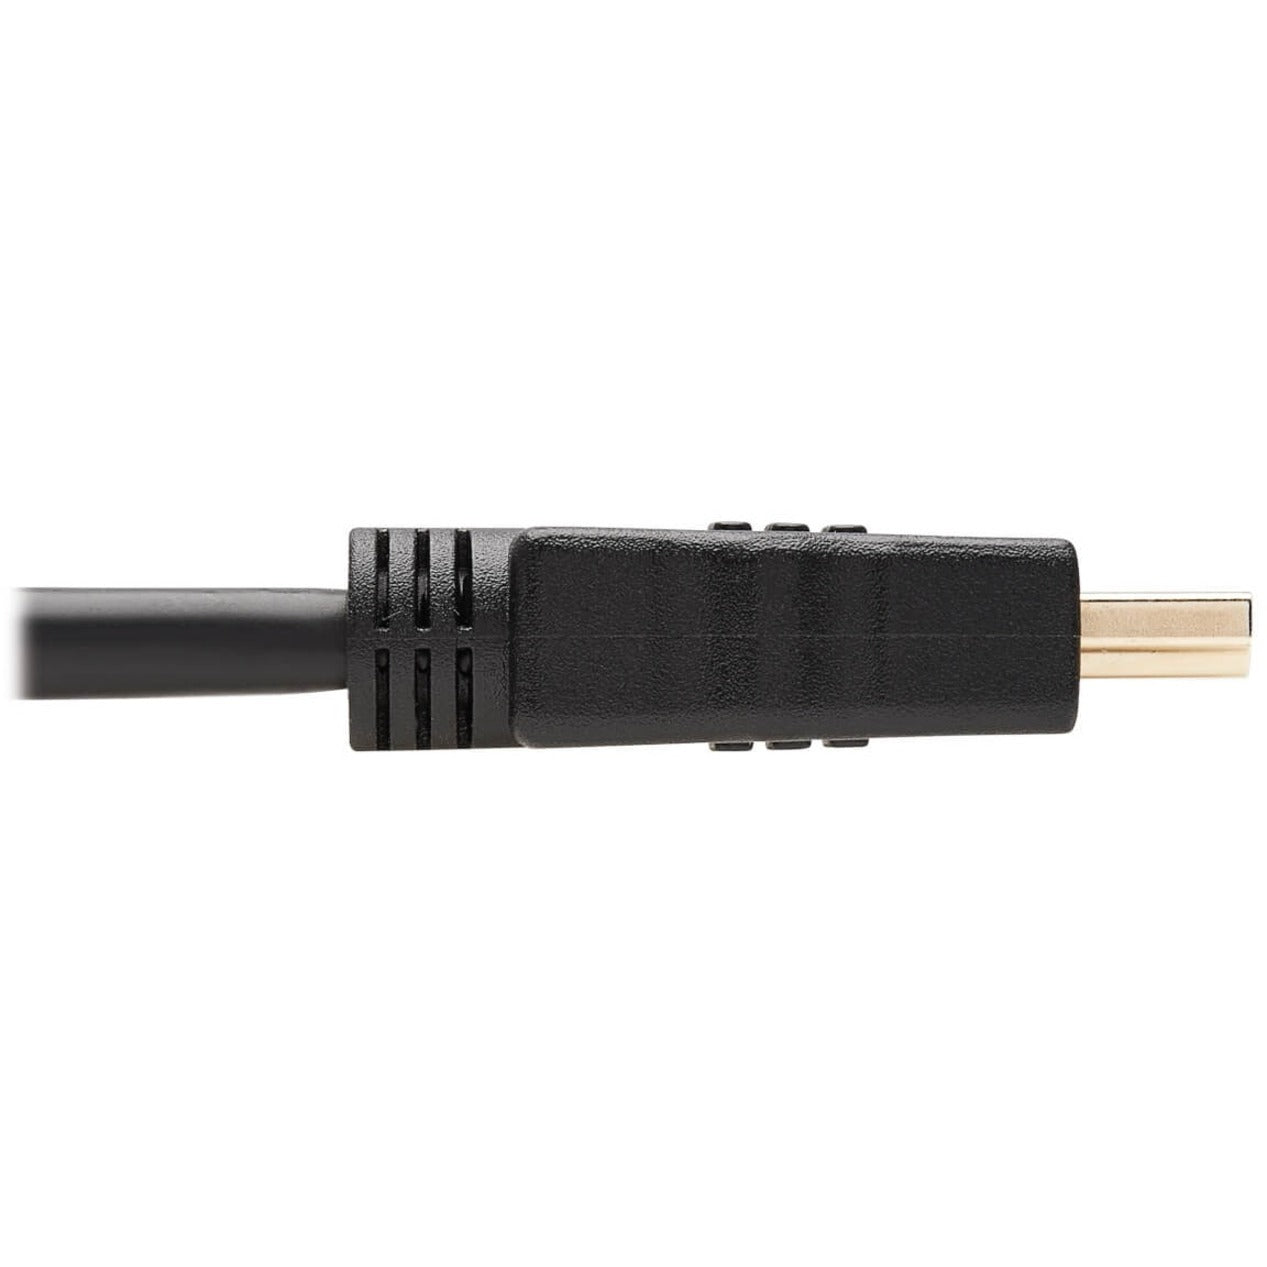 Tripp Lite P569-010 Hochgeschwindigkeits-HDMI-Kabel mit Ethernet 10 ft geformt vergoldet